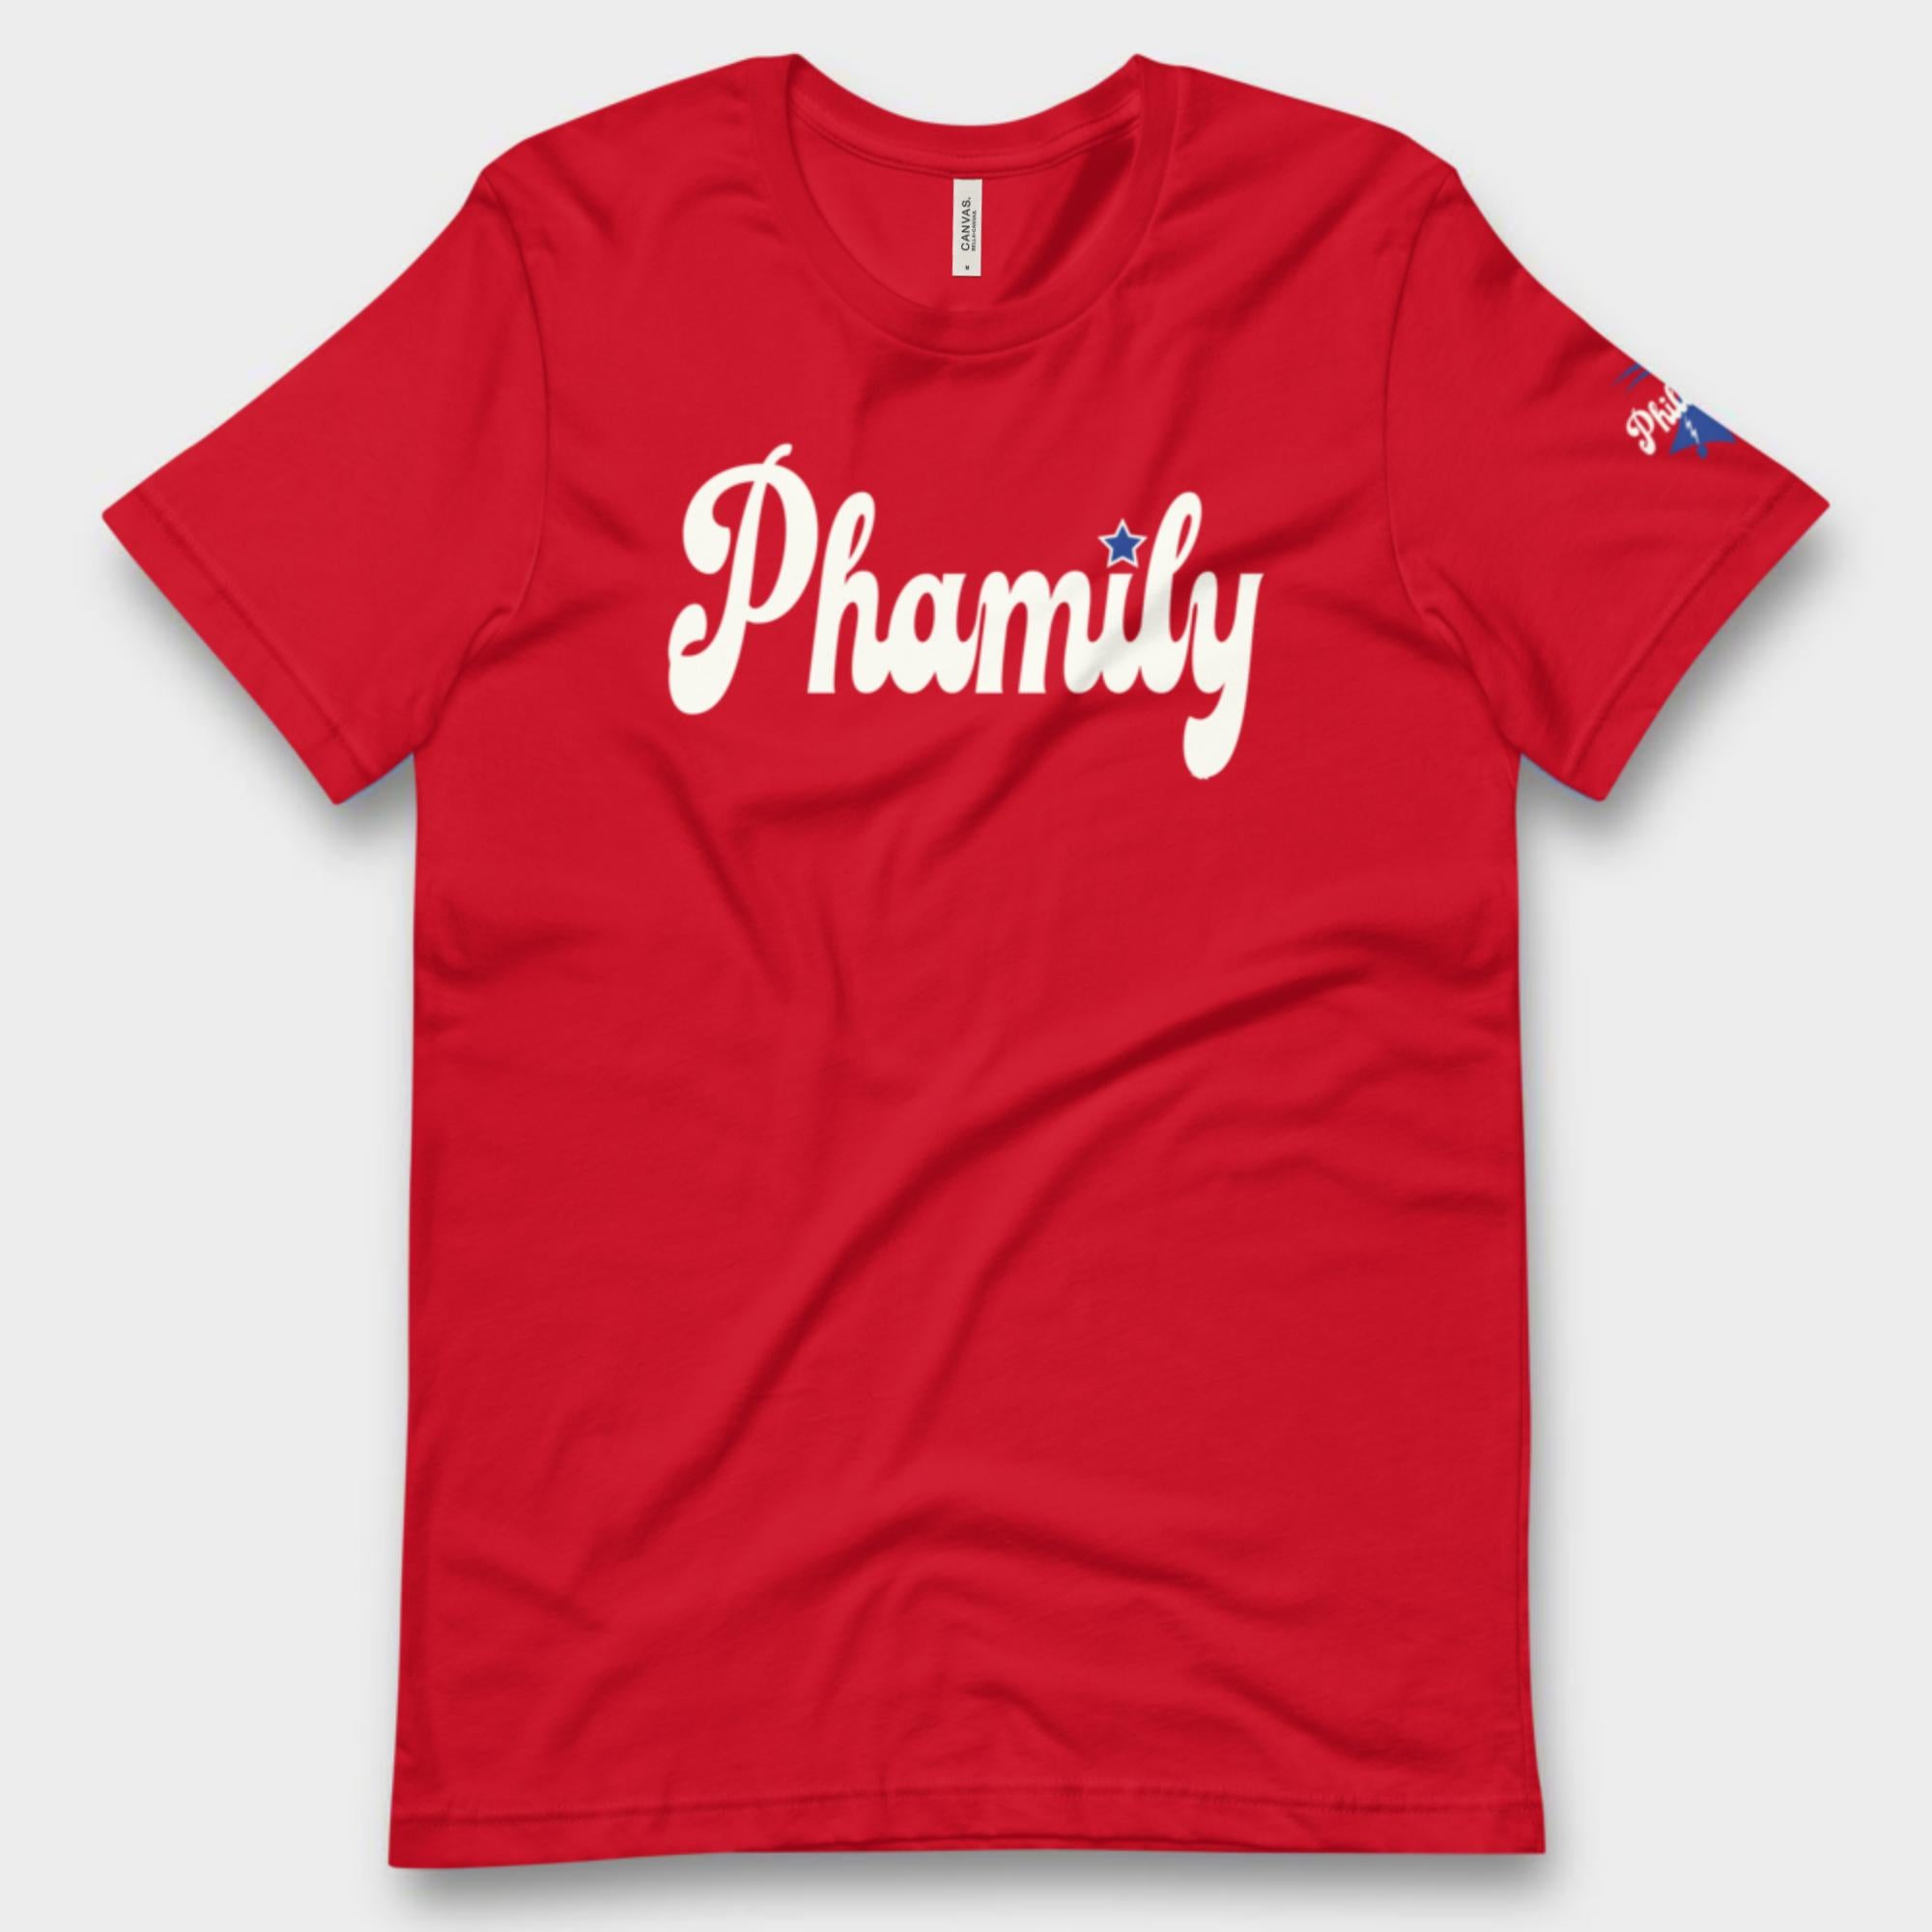 "Phamily" Tee